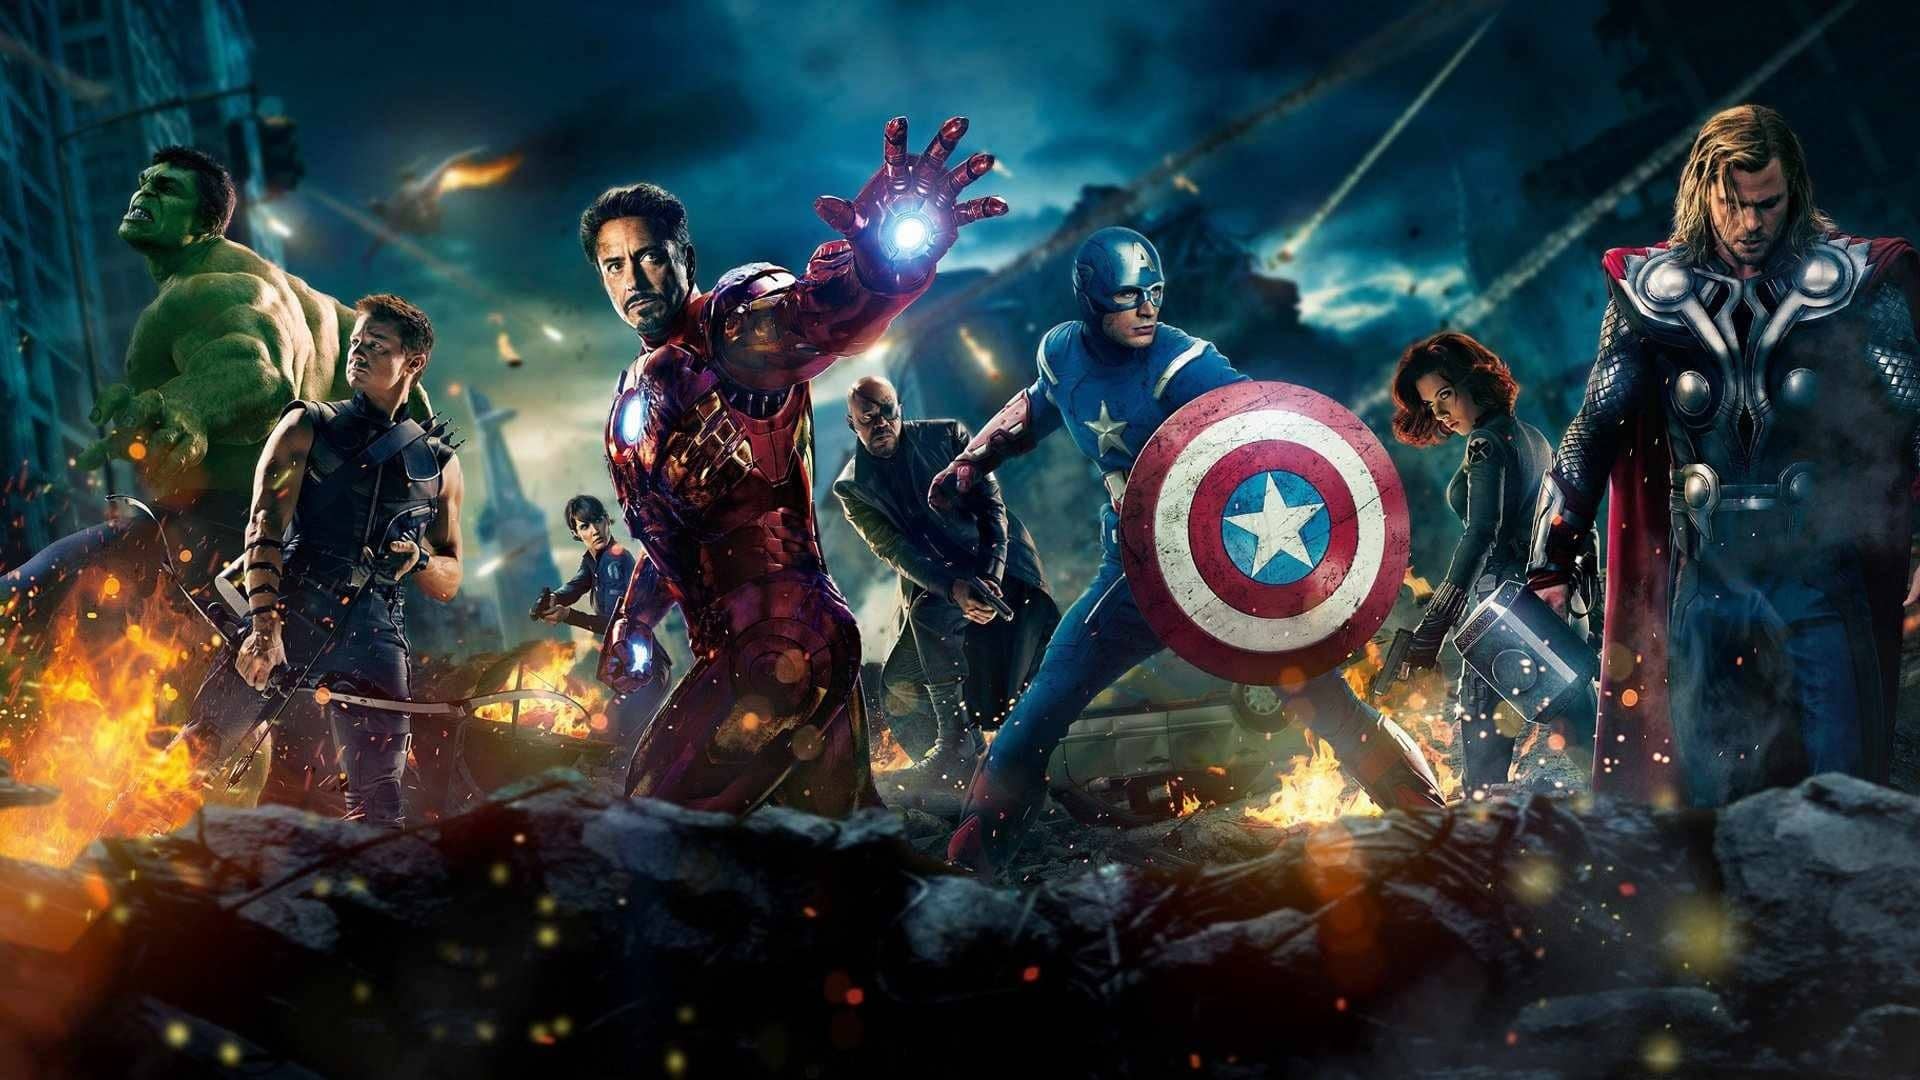 Imagen promocional de la película Avengers, disponible junto a todas las películas de marvel en disney plus